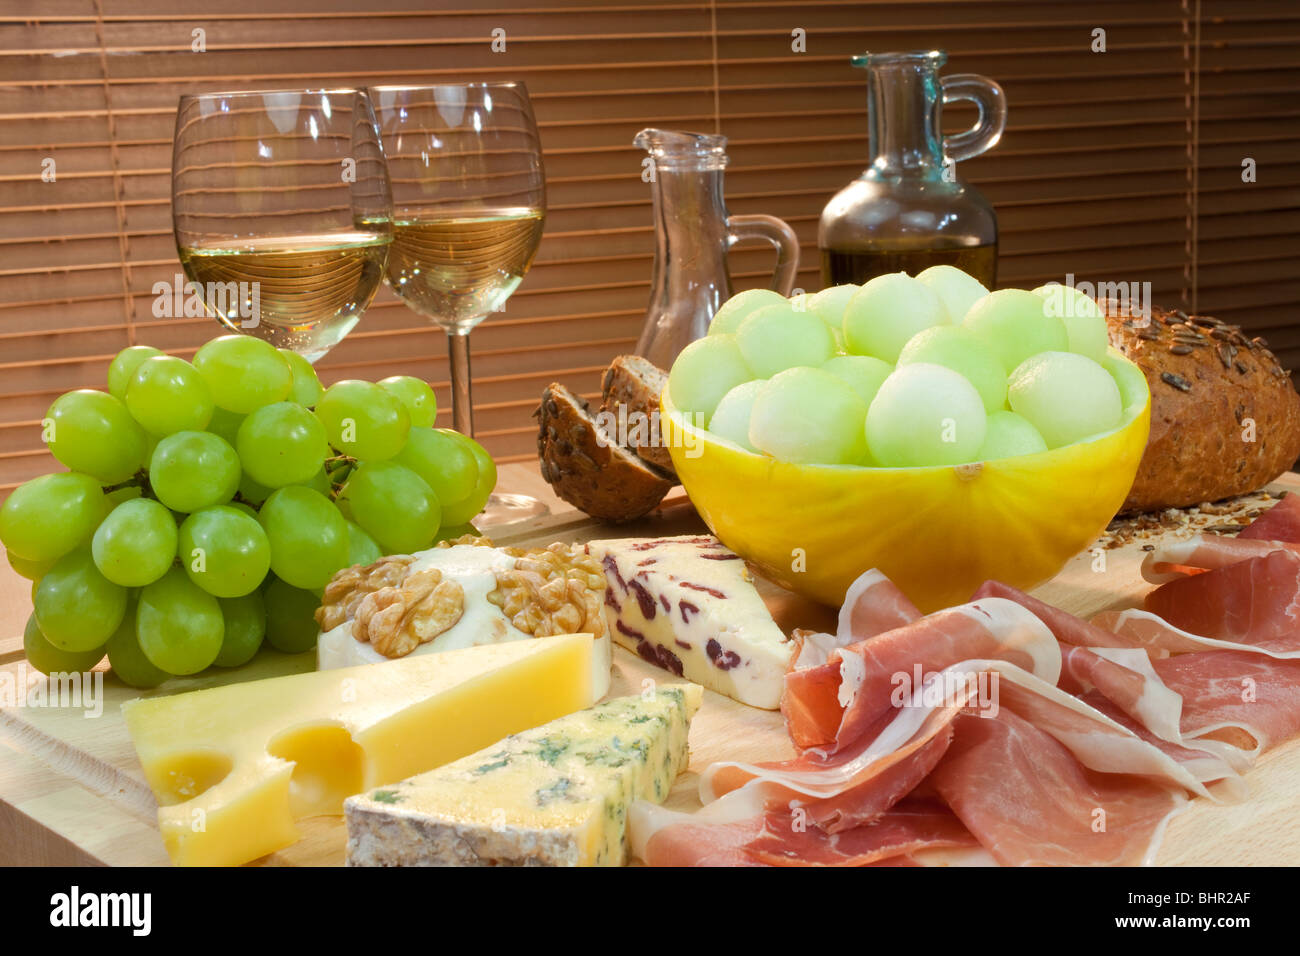 Eine Platte mit mediterranen Speisen wie Käse, Trauben, Wein, Brot, Parmaschinken, Melone, Olivenöl und Balsamico-Essig. Stockfoto